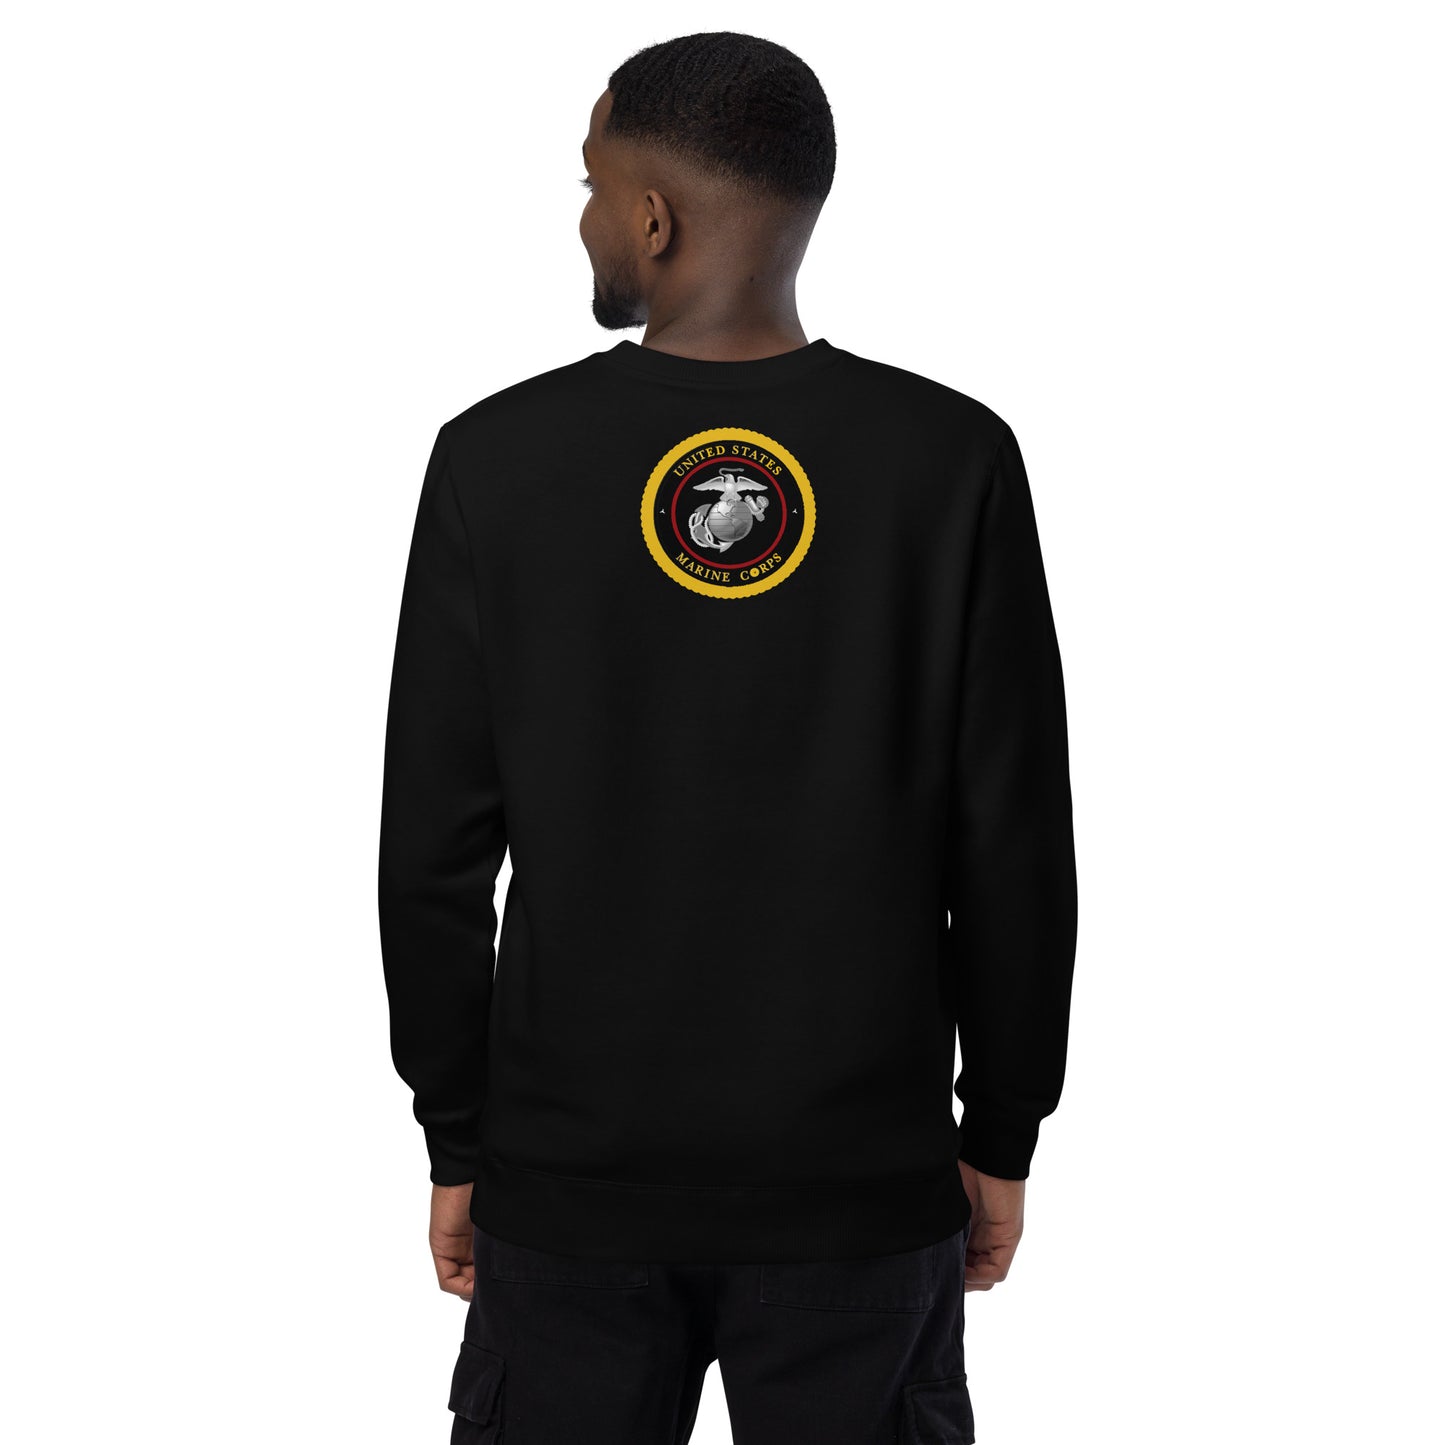 EP Marine fashion sweatshirt